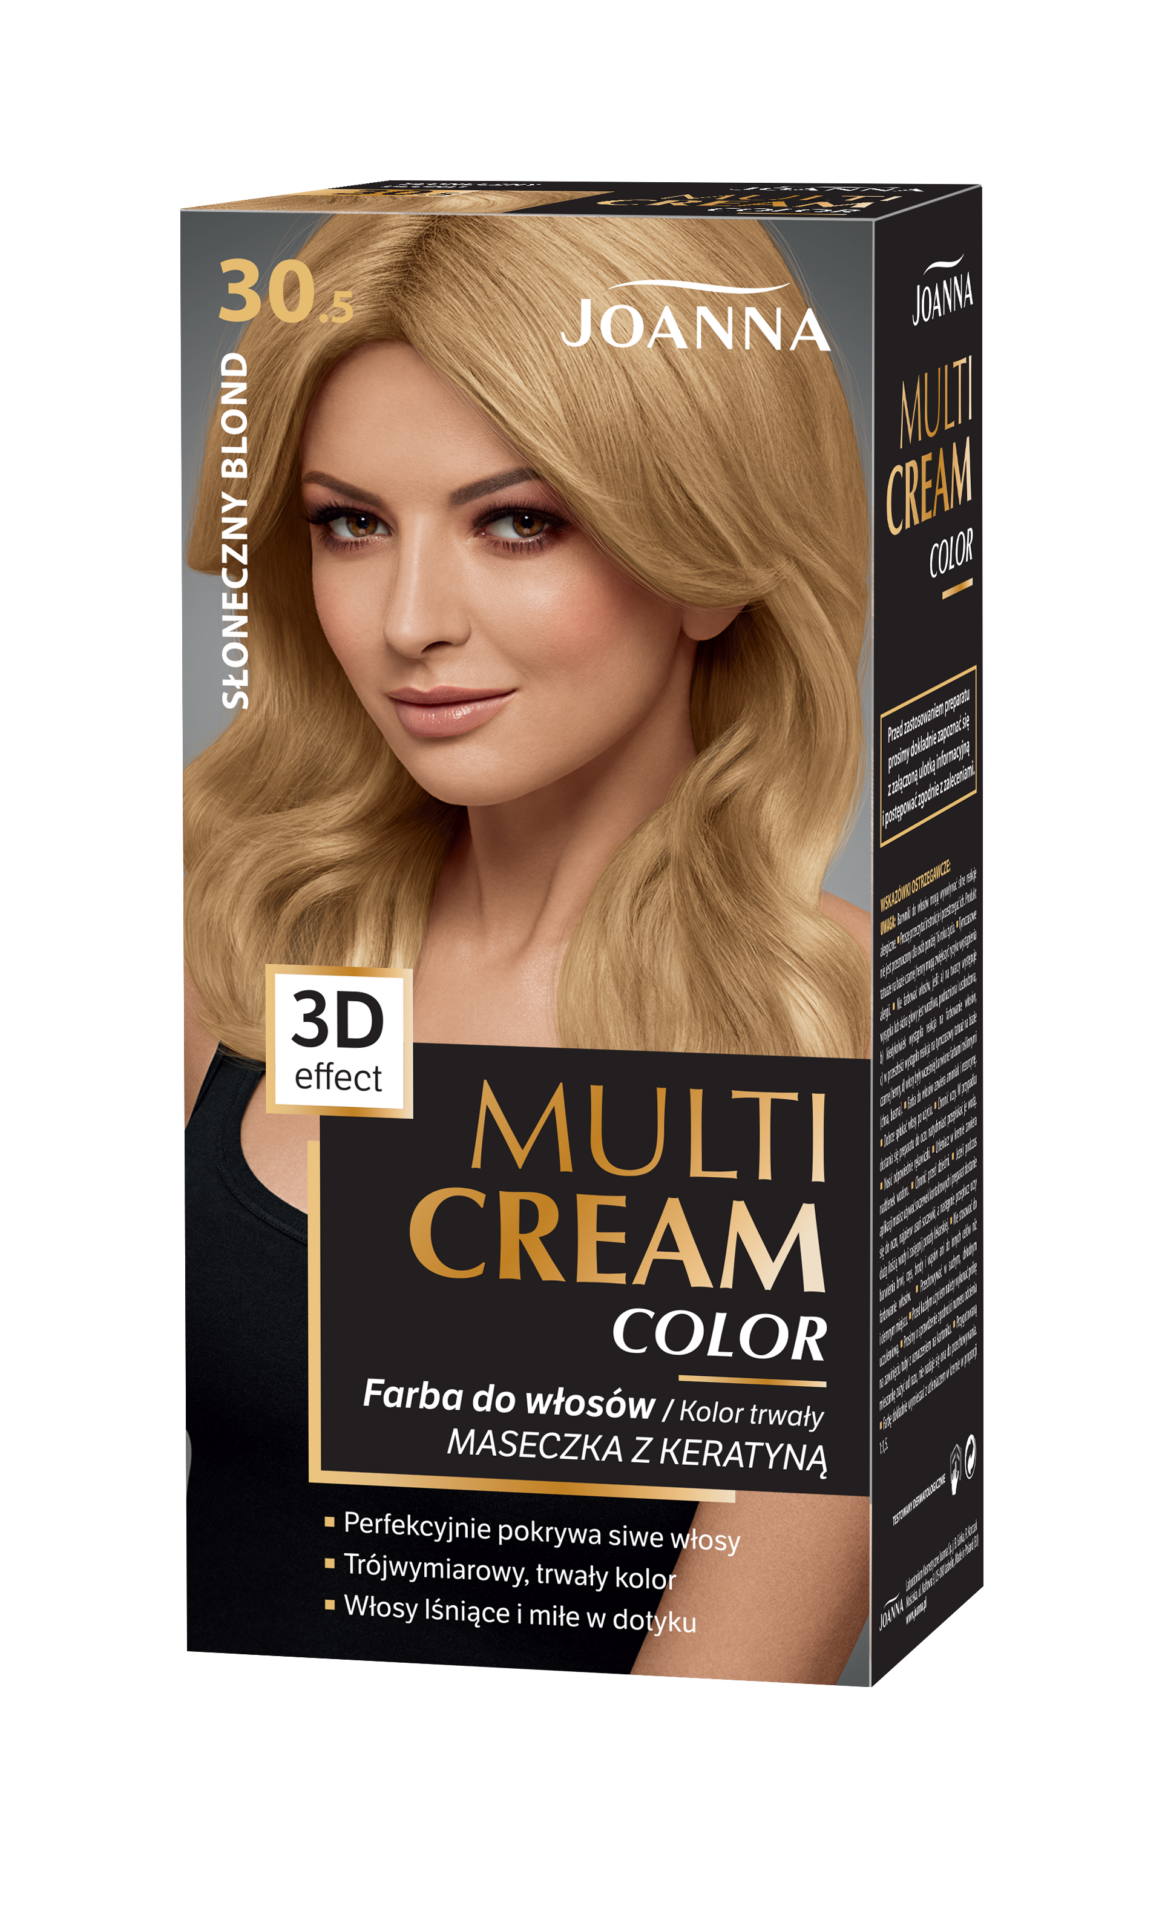 Trwała farba do włosów Joanna Multi Cream Color w odcieniu słoneczny blond nr 30.5